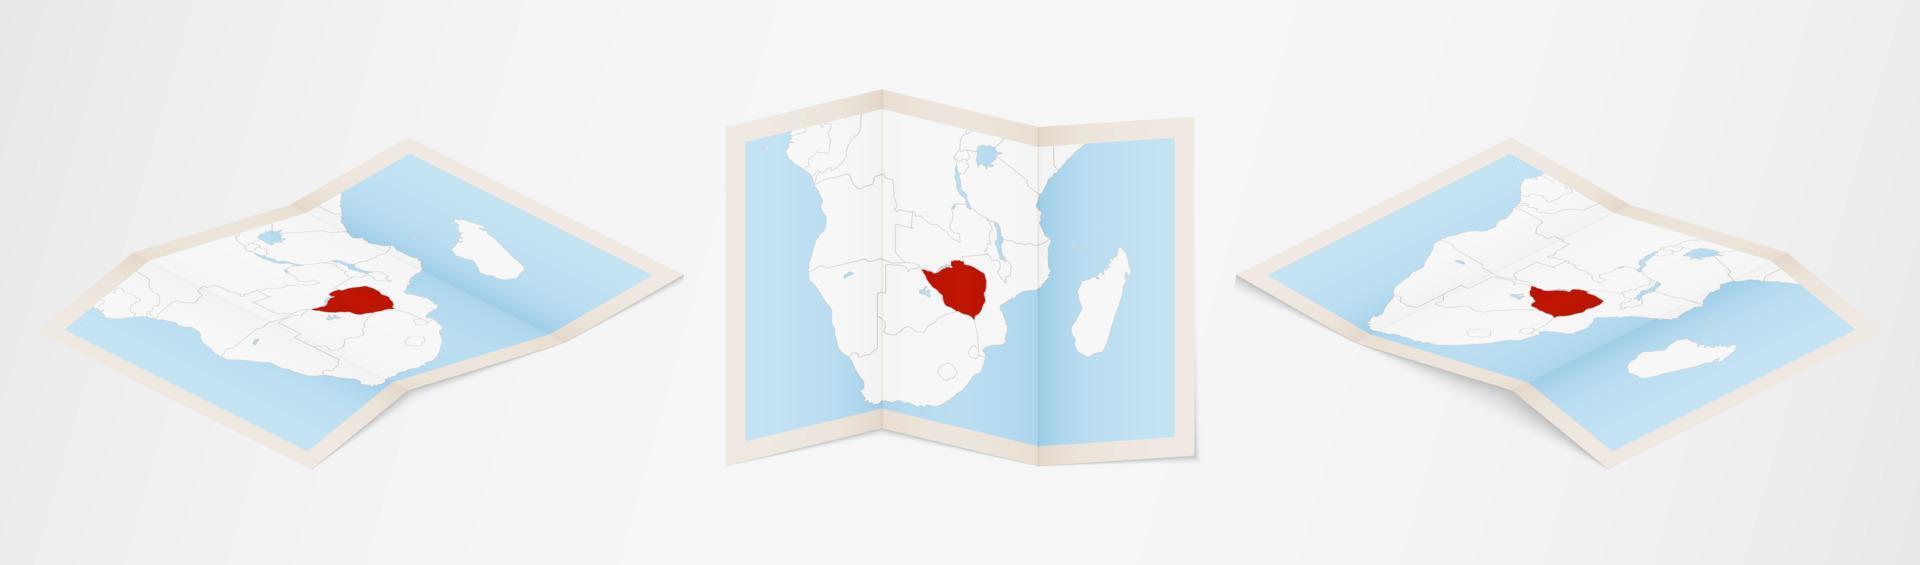 Faltkarte von Simbabwe in drei verschiedenen Versionen. vektor